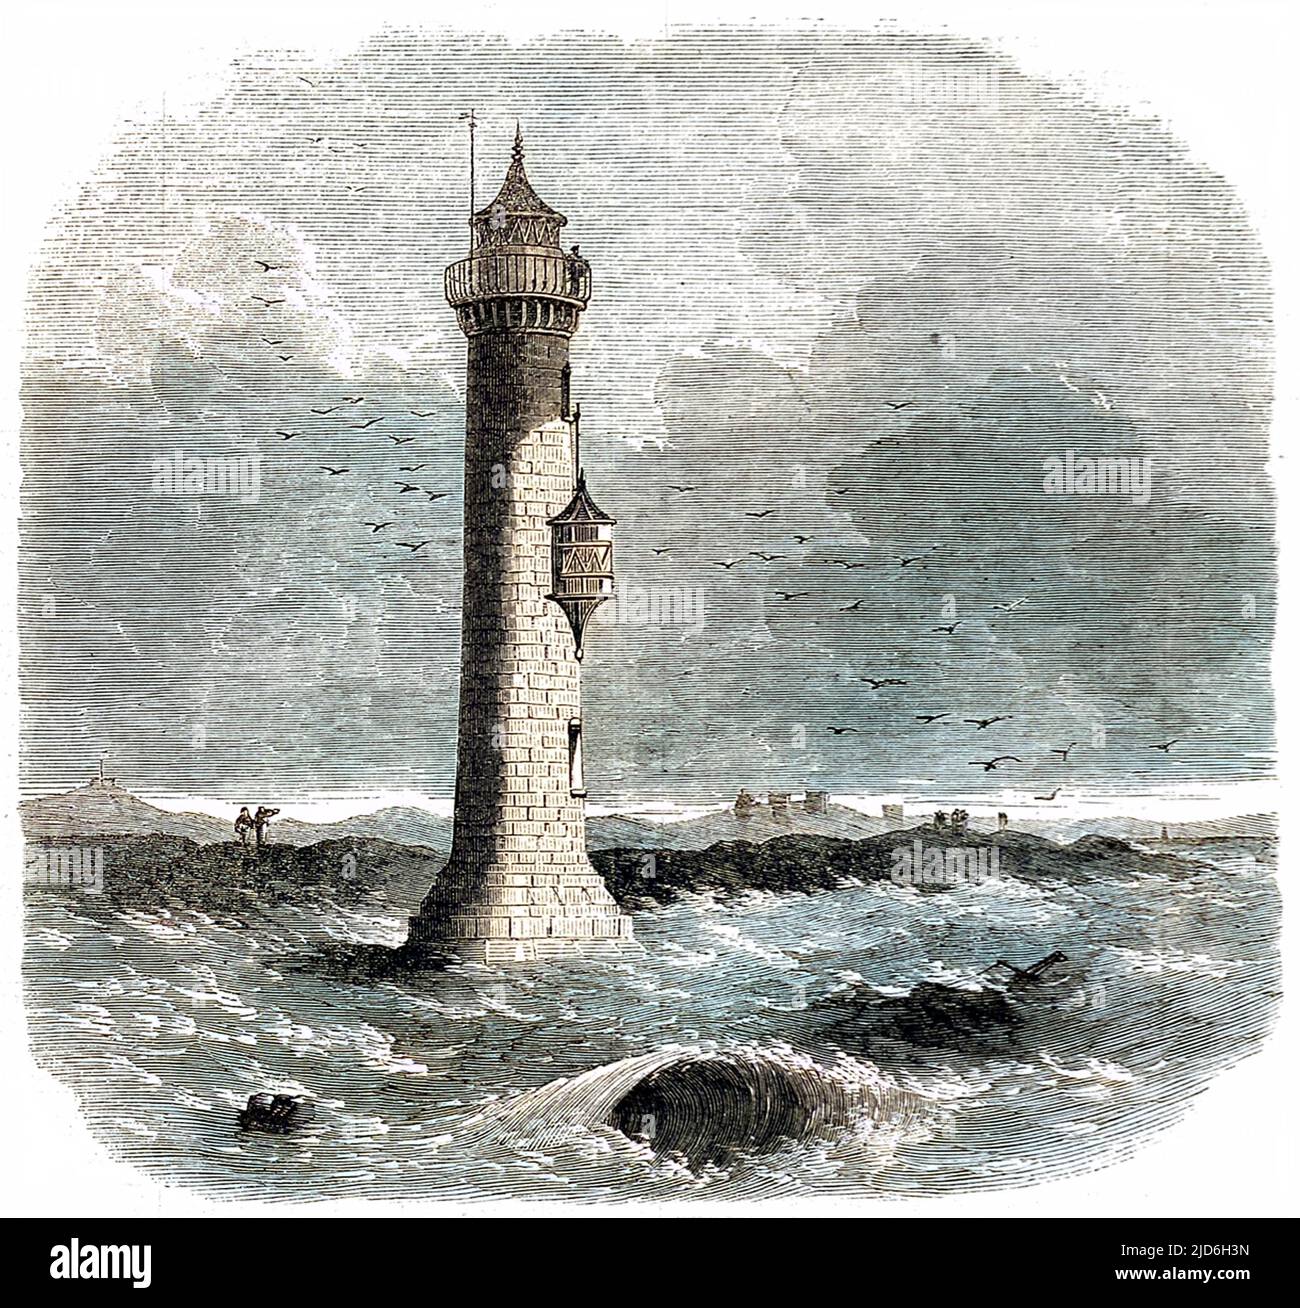 Lytham Leuchtturm, Lancashire, der circa erbaut wurde. 1848 und wurde durch schwere Stürme zerstört. Kolorierte Version von: 10216599 Datum: 1863 Stockfoto